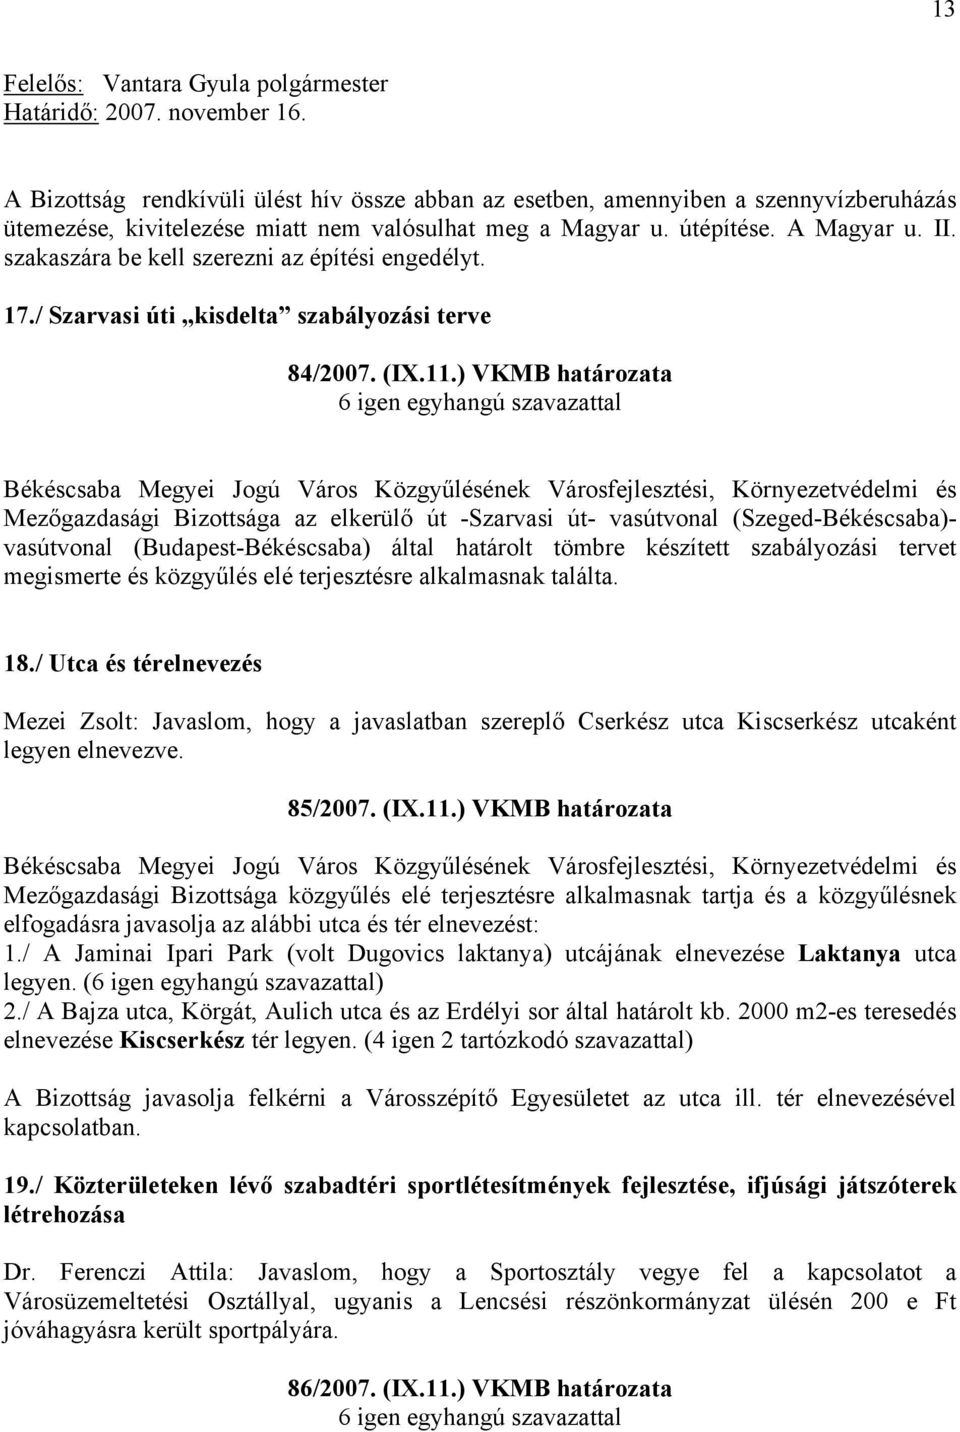 ) VKMB határozata Békéscsaba Megyei Jogú Város Közgyűlésének Városfejlesztési, Környezetvédelmi és Mezőgazdasági Bizottsága az elkerülő út -Szarvasi út- vasútvonal (Szeged-Békéscsaba)- vasútvonal